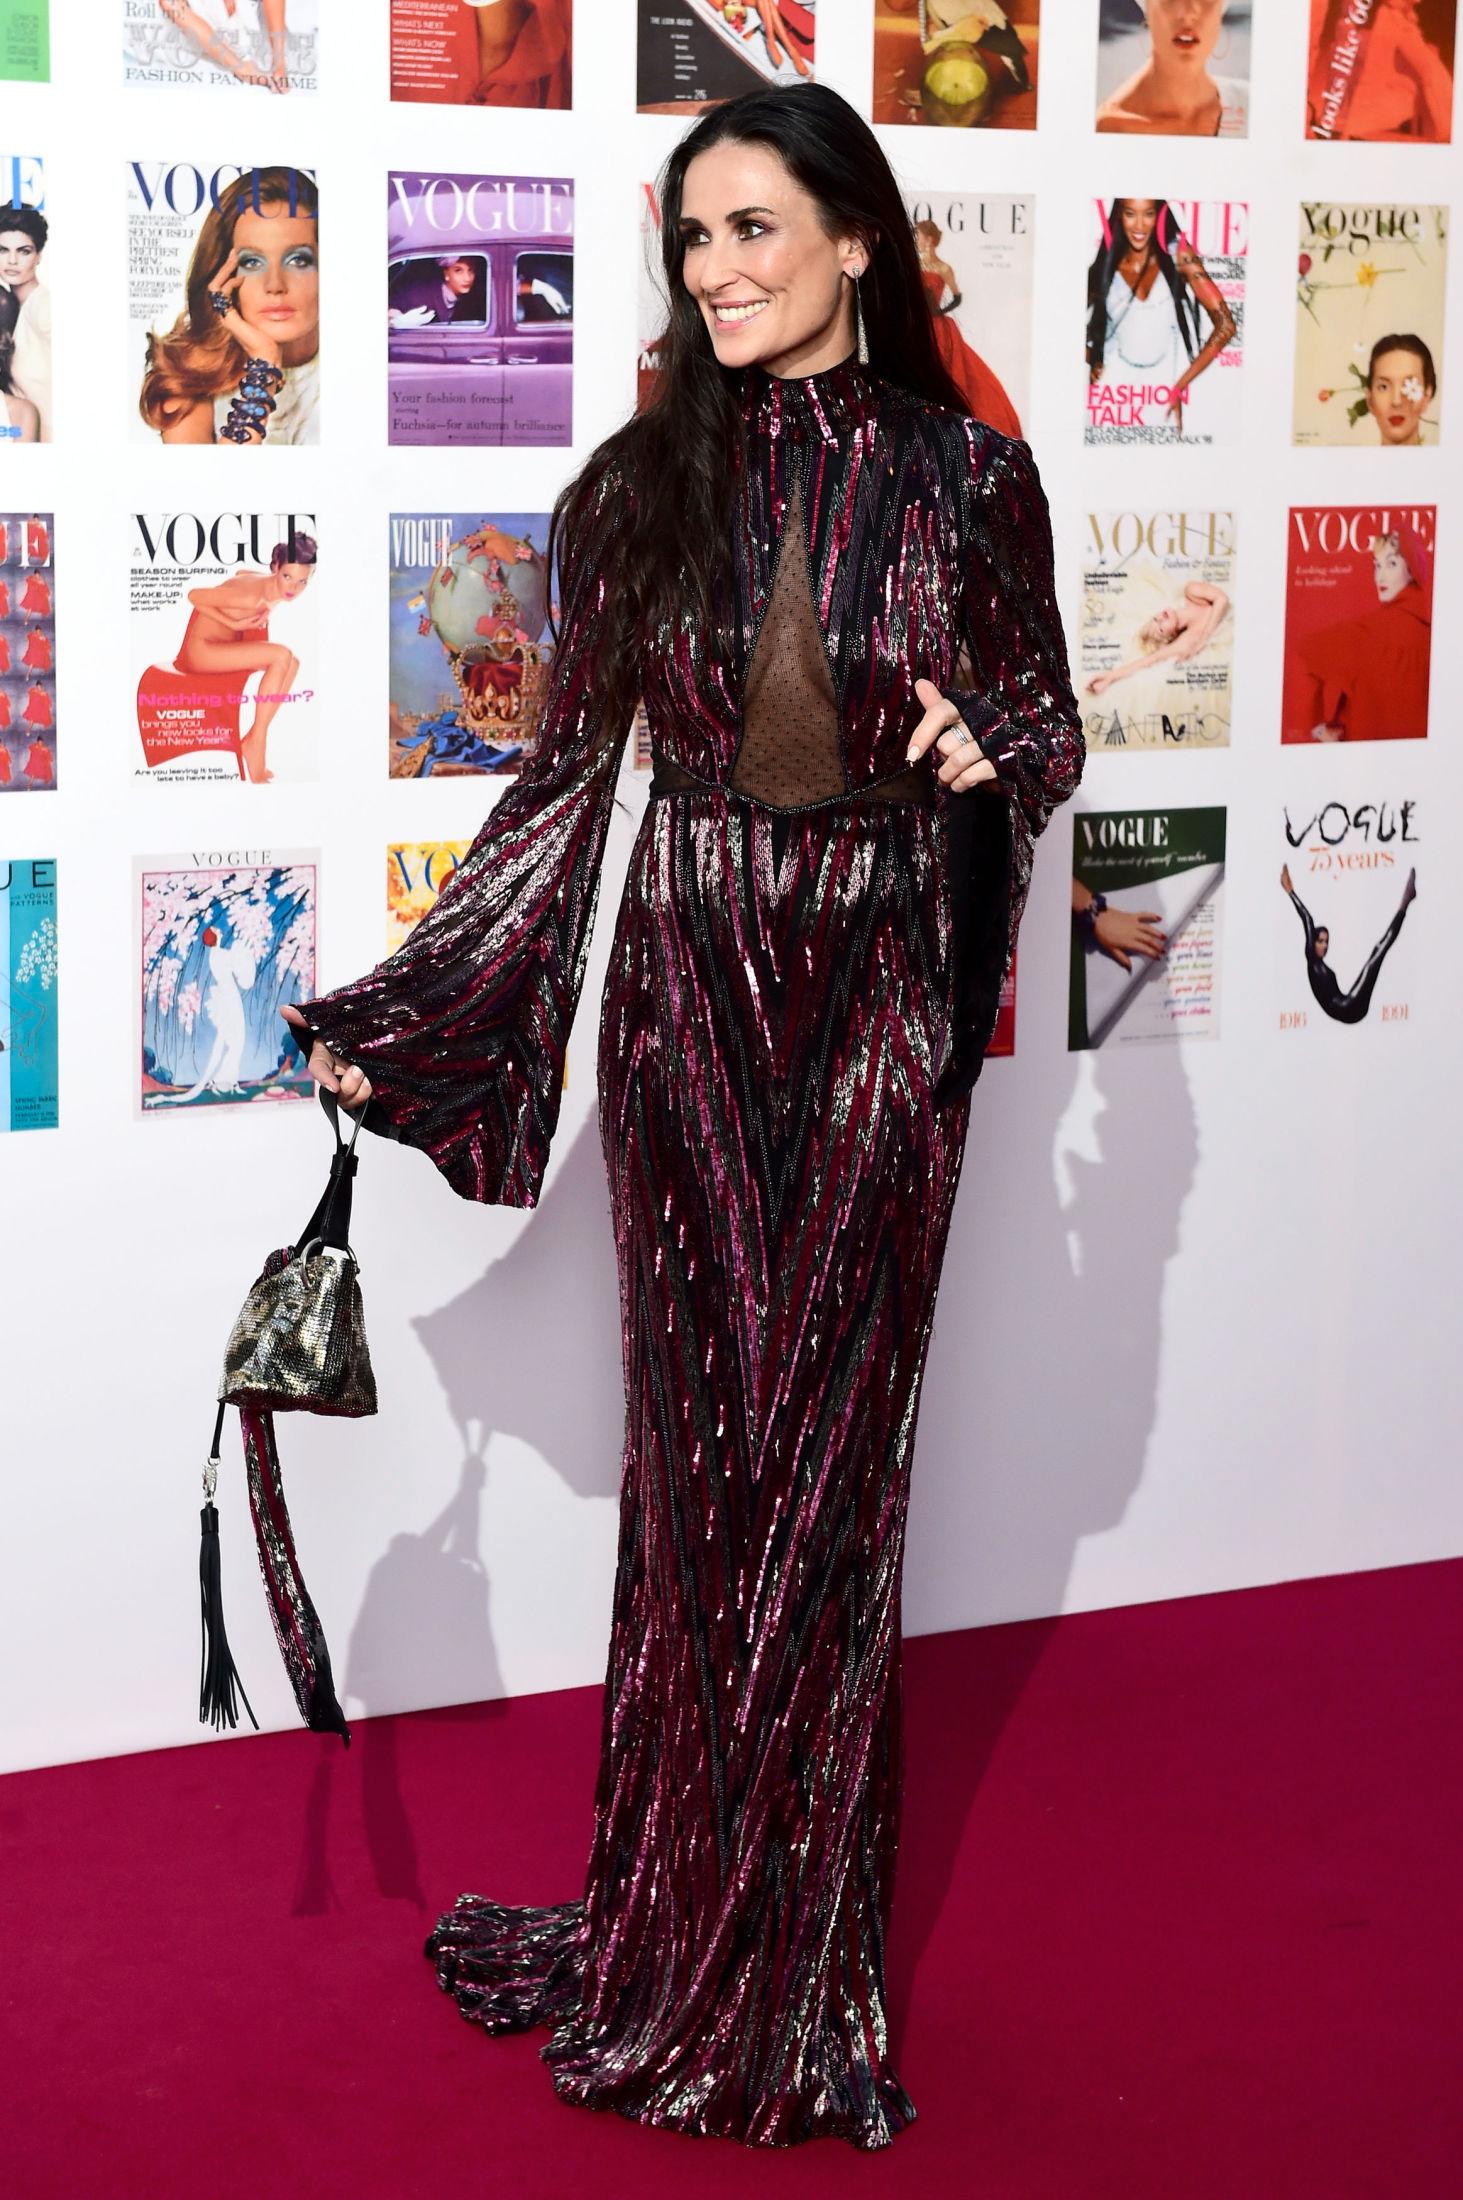 GLITRET: Også Demi Moore hadde på seg en lekker Roberto Cavalli-kjole. Kjolen er av sort silke med glassperler brodert i sikksakk-mønster. Legg merke til den sexy detaljen med det gjennomsiktige partiet på brystet. Foto: Ap